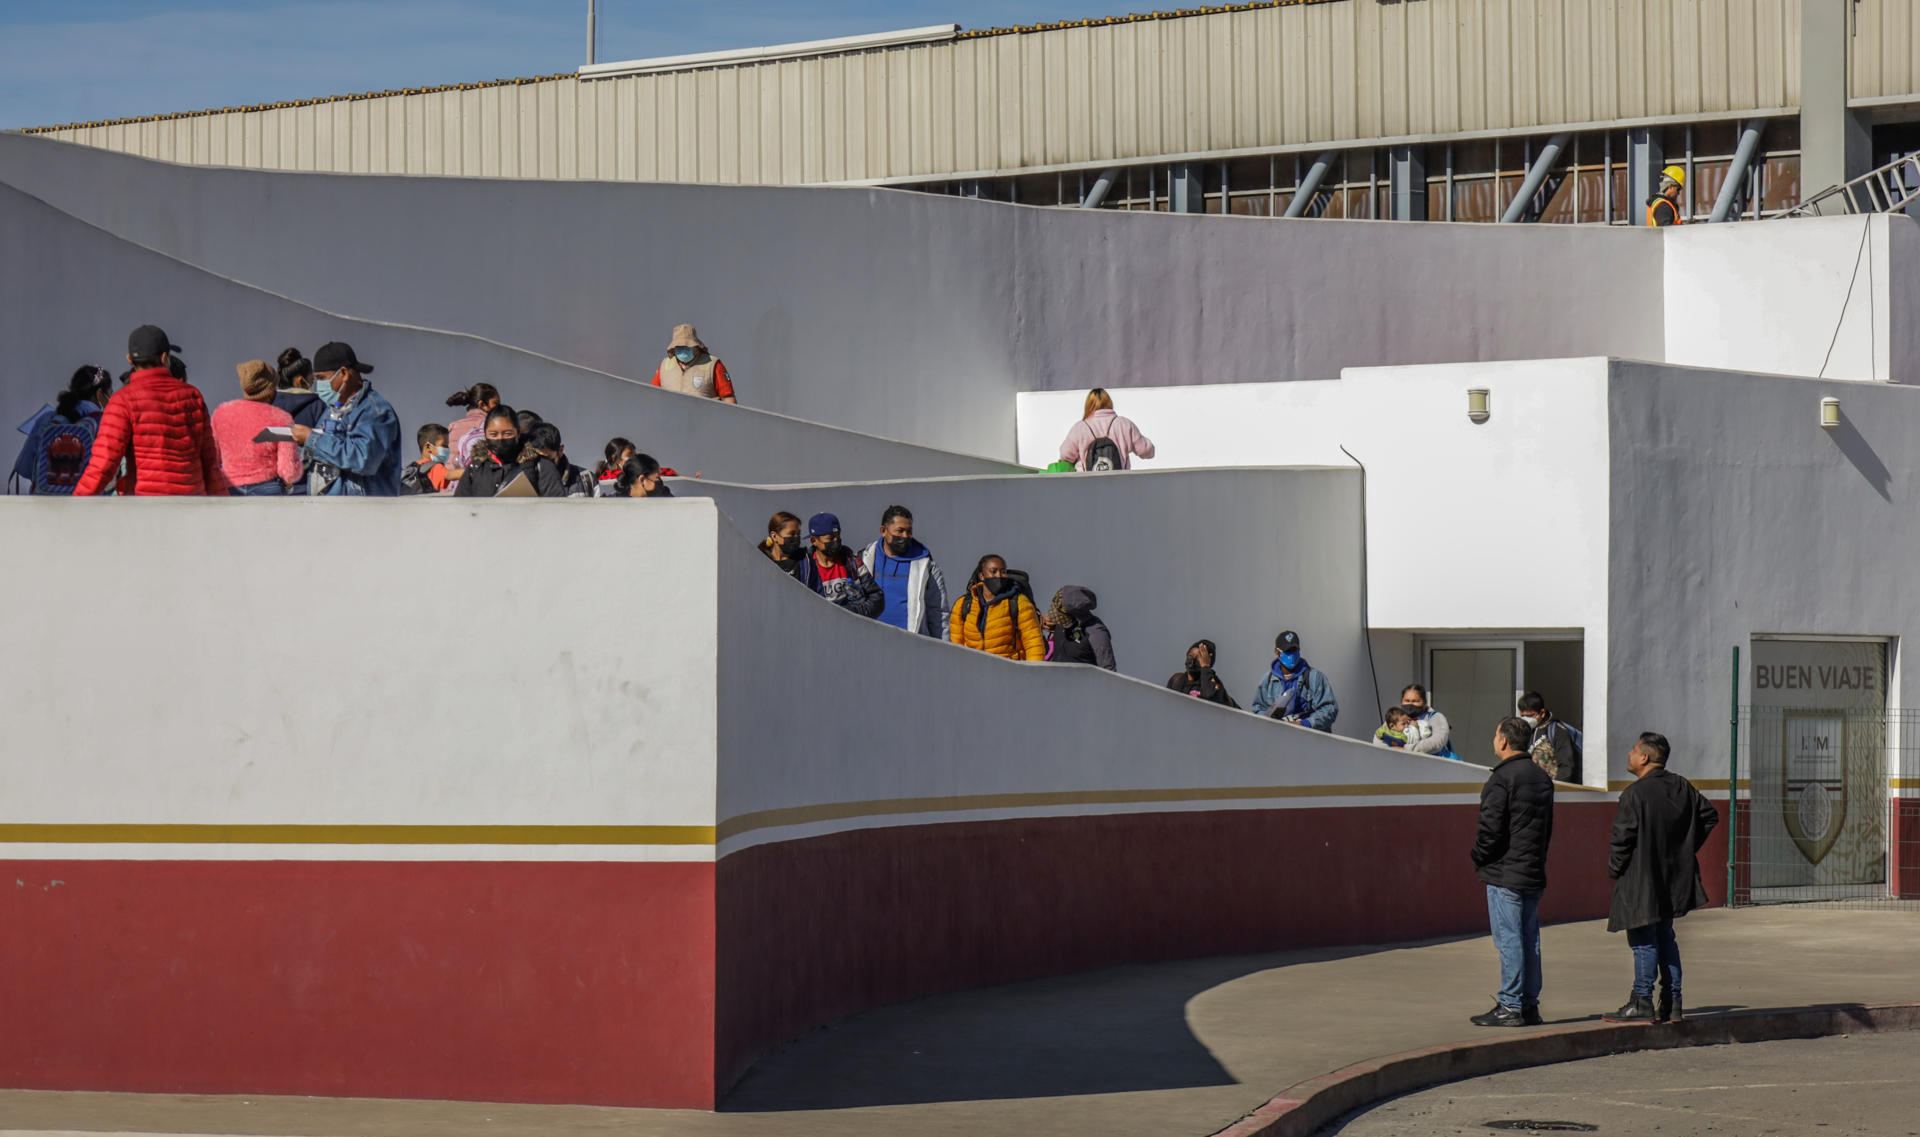 Grupos de migrantes hacen fila para cruzar a Estados Unidos y continuar con su proceso de asilo a través de la garita internacional del Chaparral, en la fronteriza Tijuana (México), en una fotografía de archivo. EFE/Joebeth Terriquez